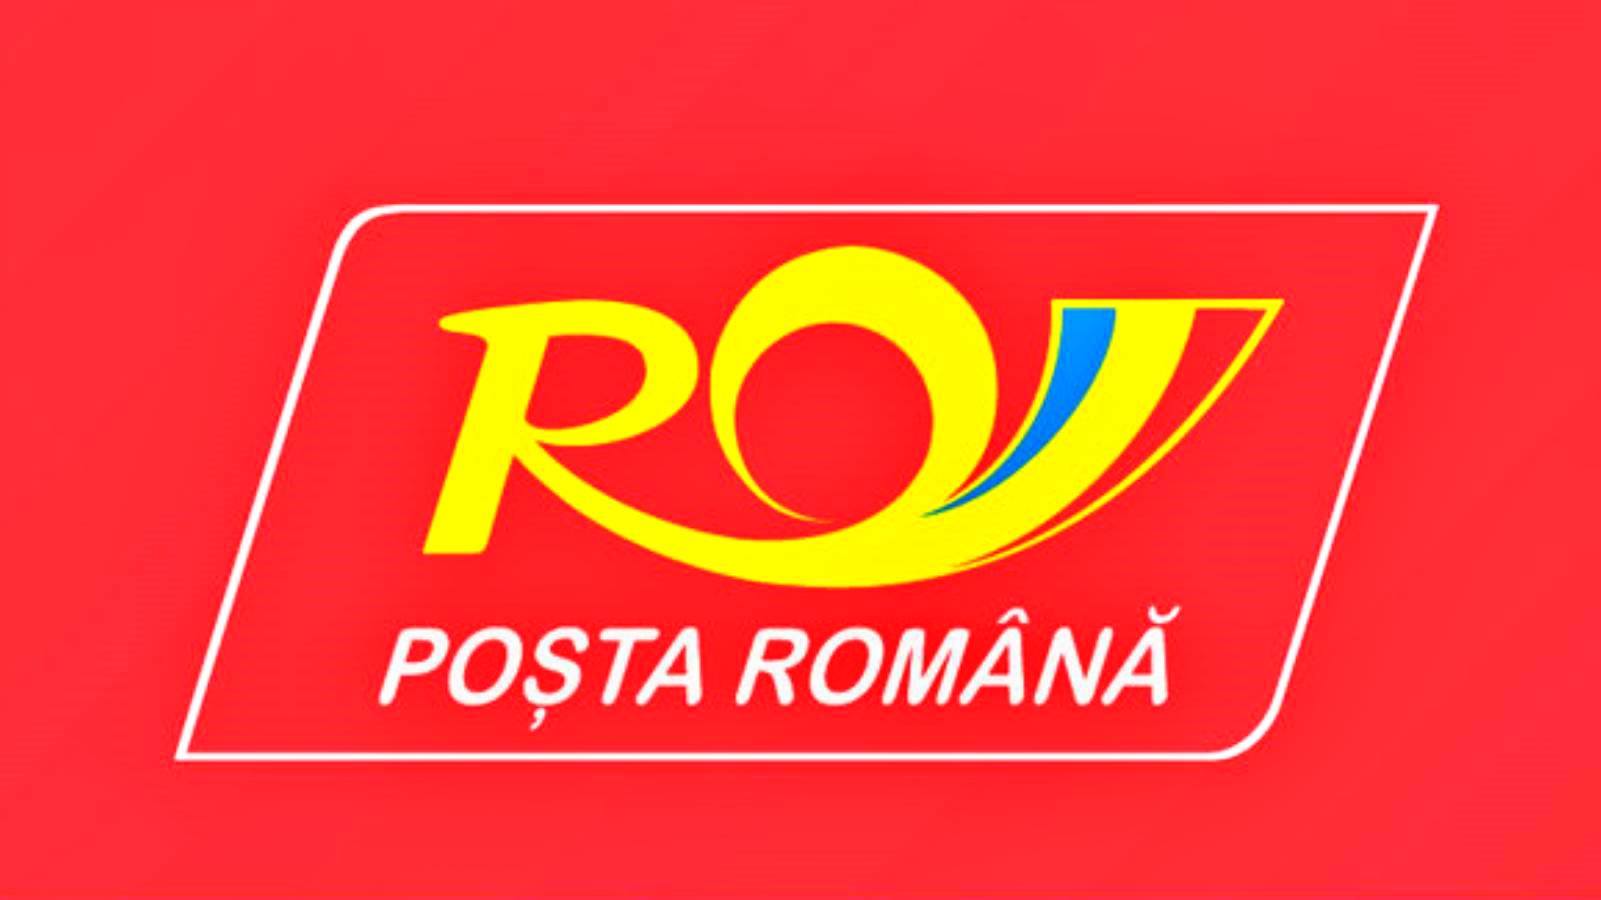 Roemeens postkantoor Schema Roemeense nationale feestdag